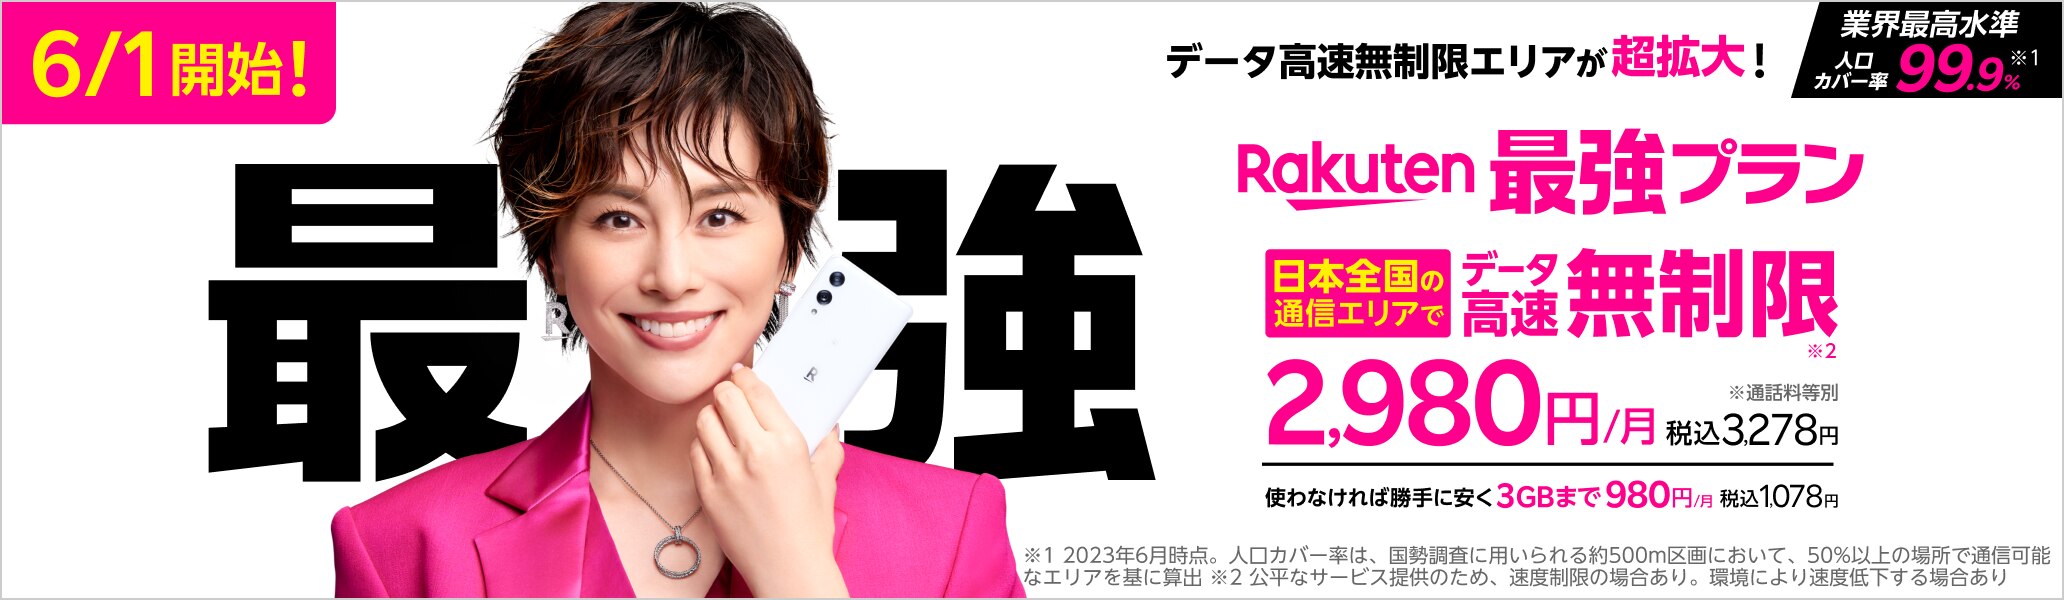 「Rakuten最強プラン」では、データ高速無制限エリアが超拡大で、日本全国の通信エリアで高速データ通信が無制限に。※公平なサービスのため、速度制限の場合あり。環境により速度低下する場合あり